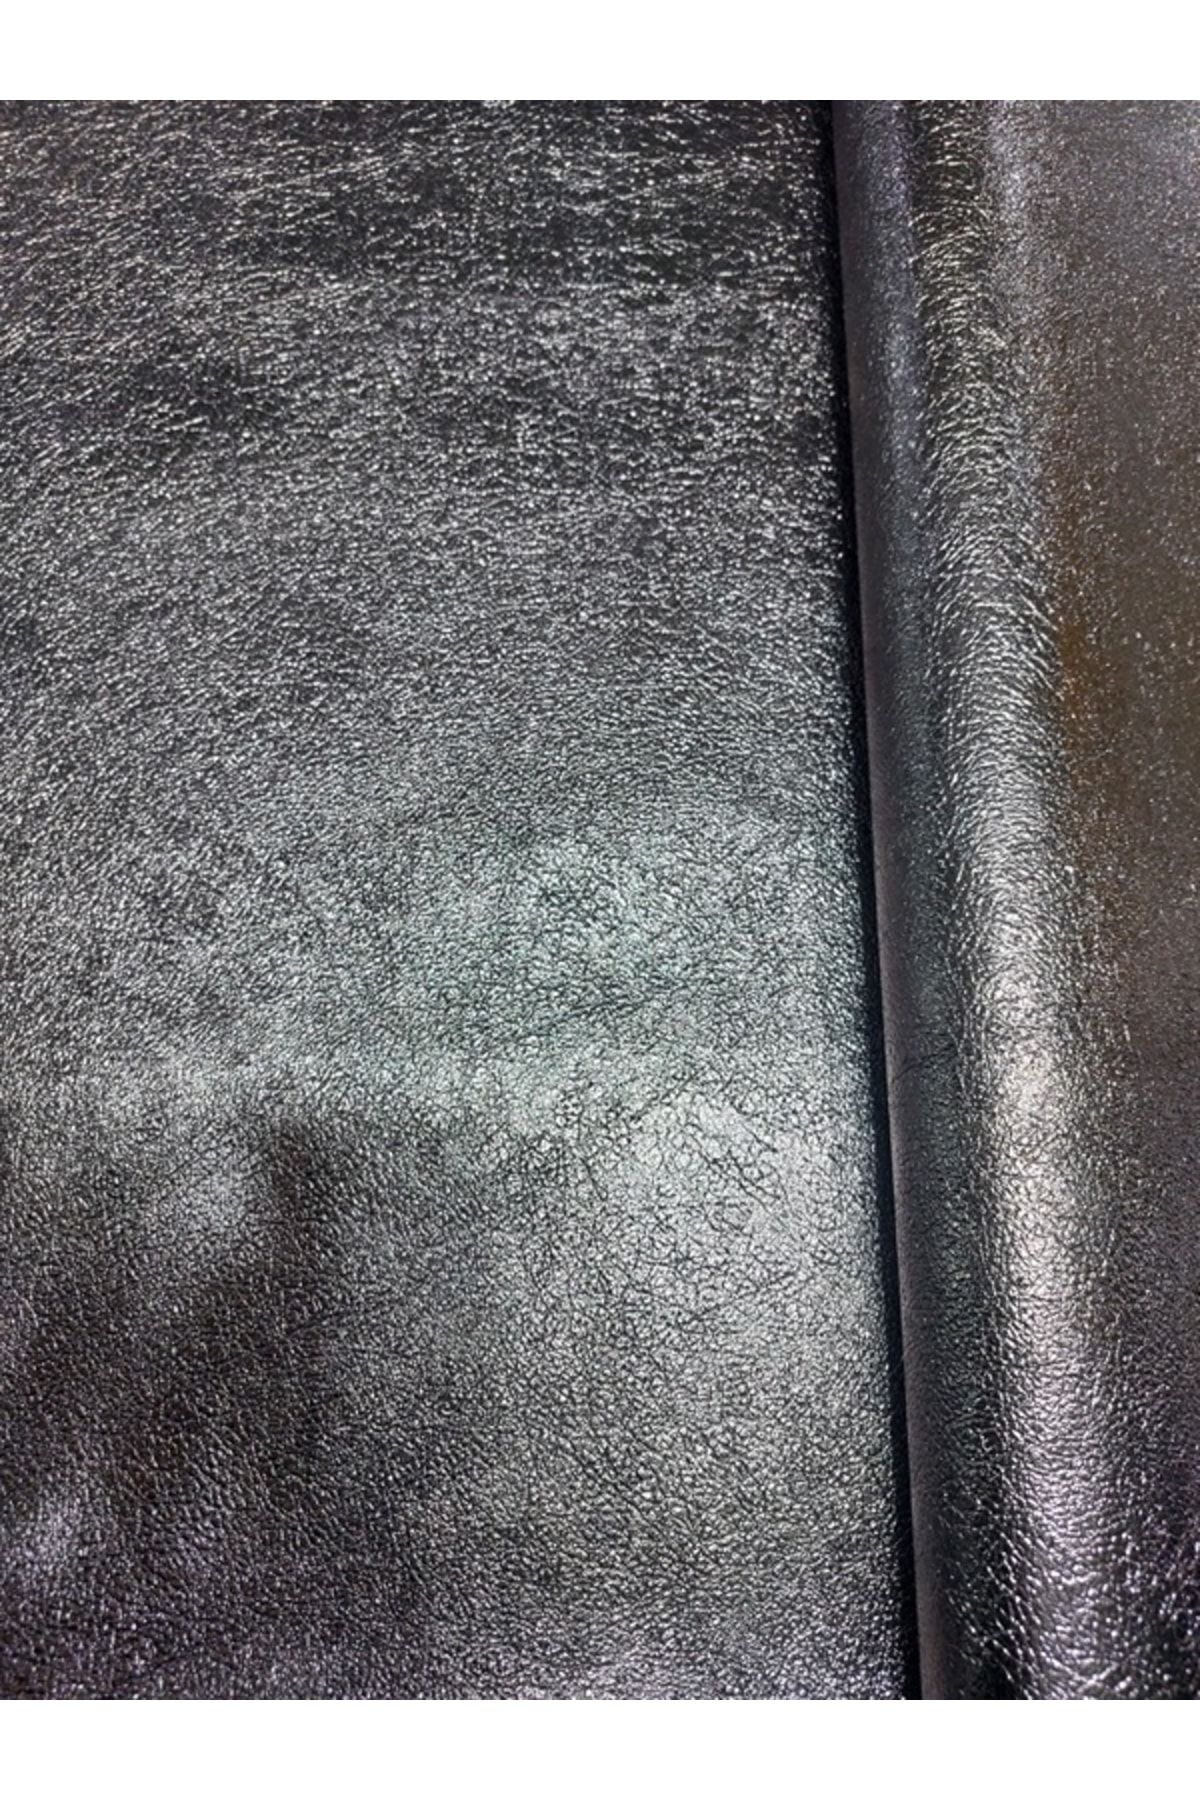 LANSE SUNİ DERİ Yapışkanlı Gümüş&bronz Renk Suni Deri Oto Döşeme,mobilya,aksesuar,çanta 140 Cm X 100 Cm